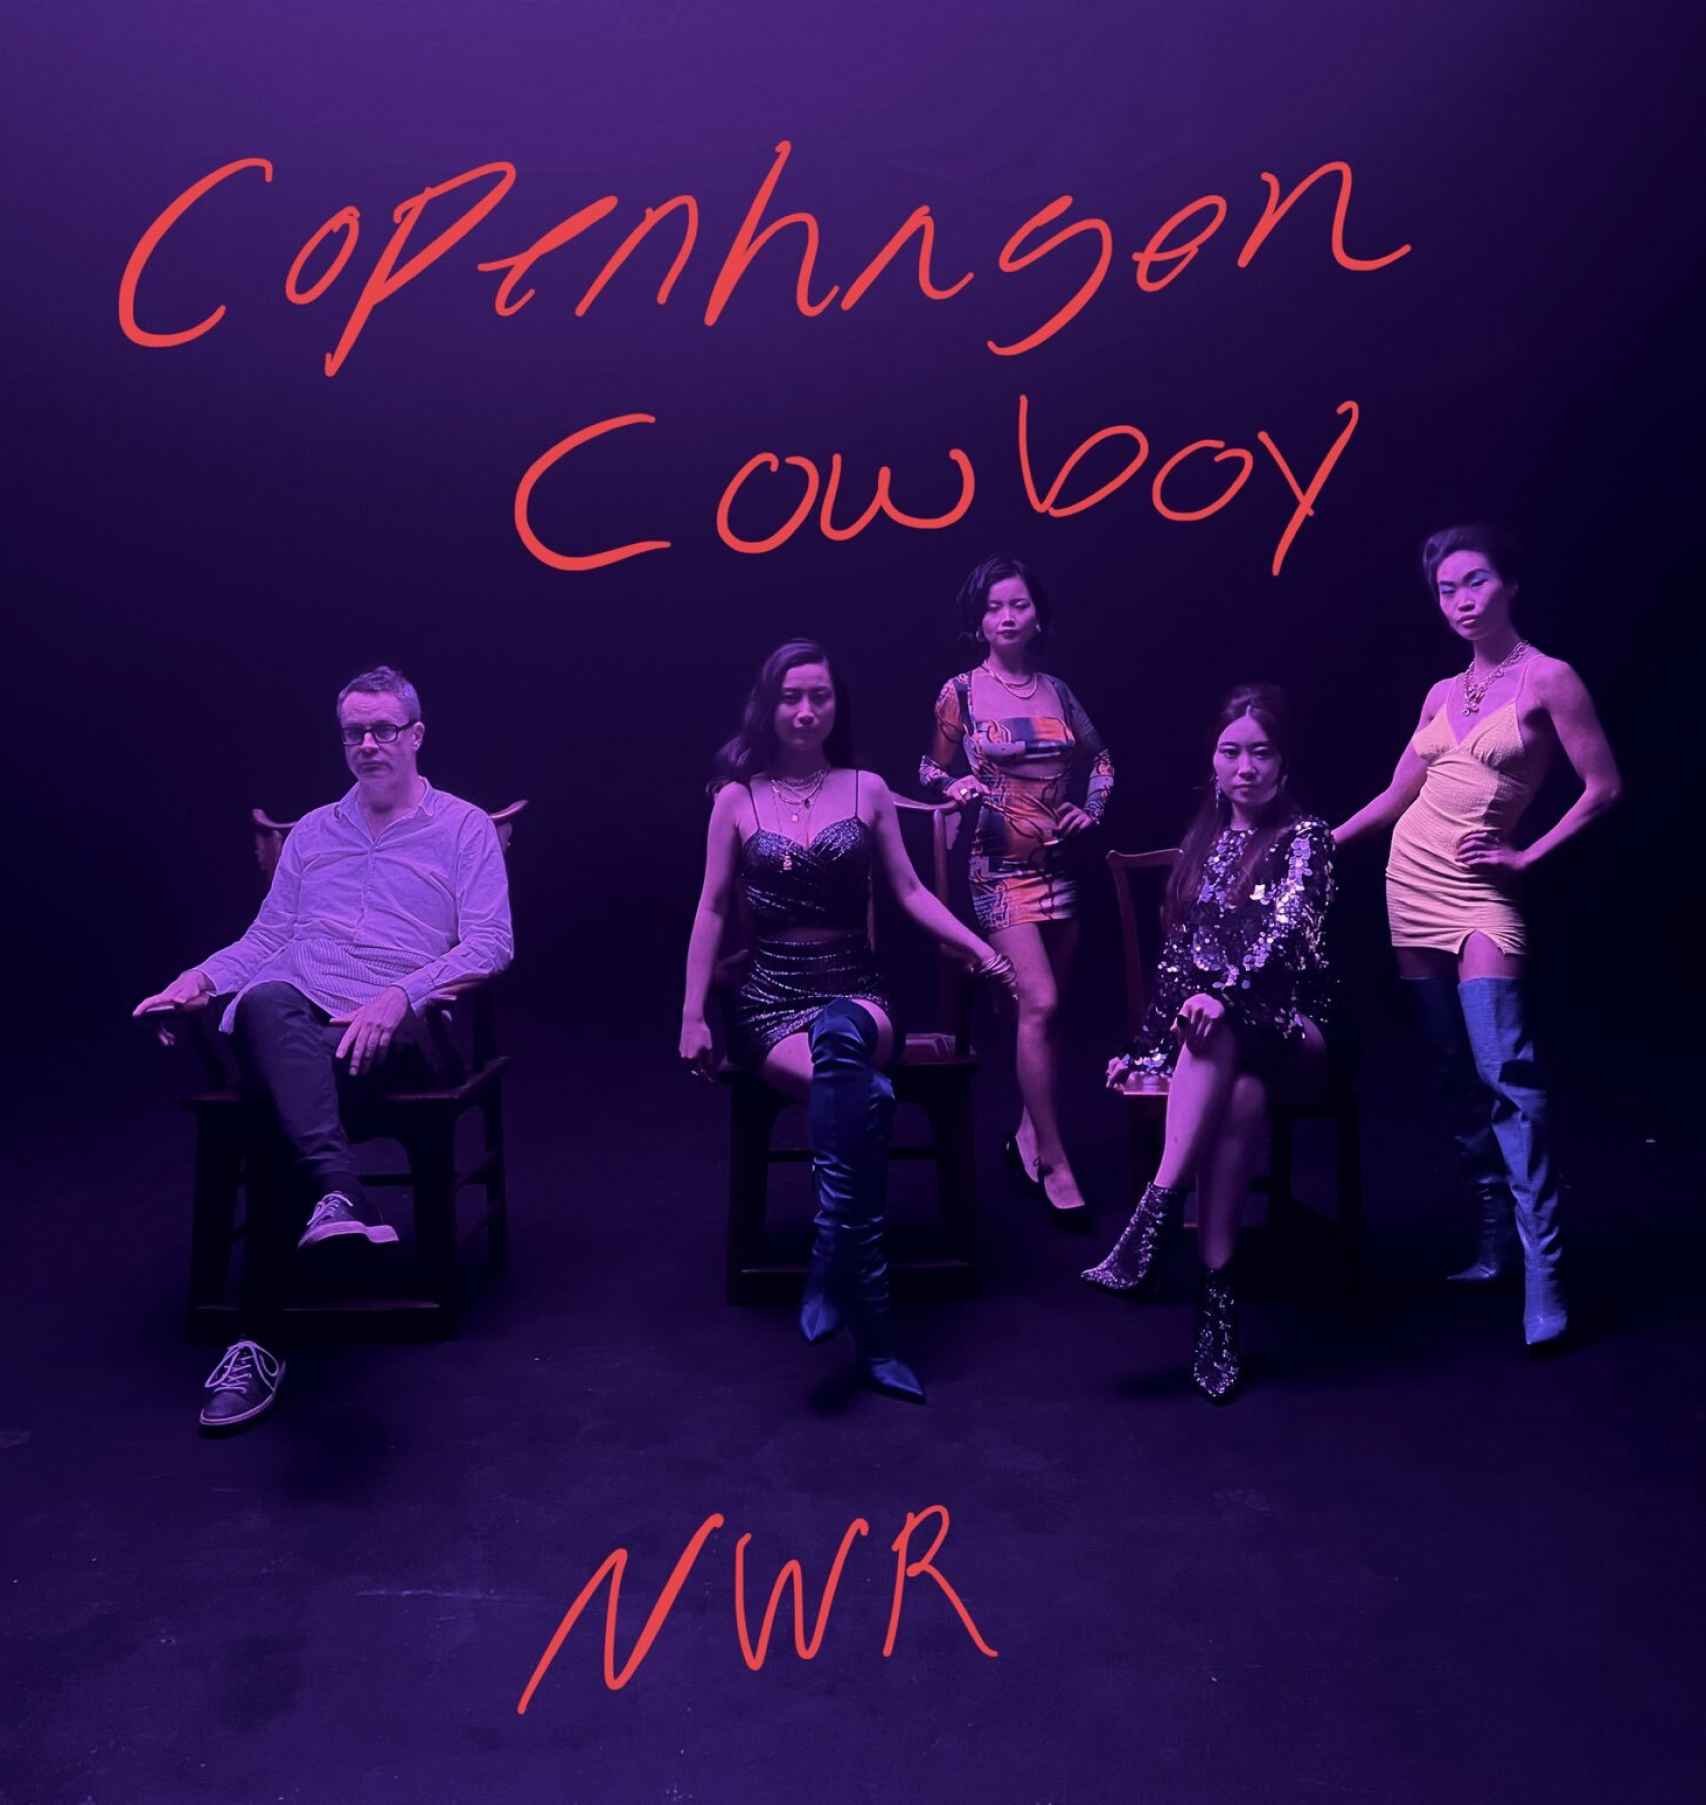 Imagen de presentación de 'Copenhagen Cowboy', el nuevo proyecto de Nicholas Winding Ref.